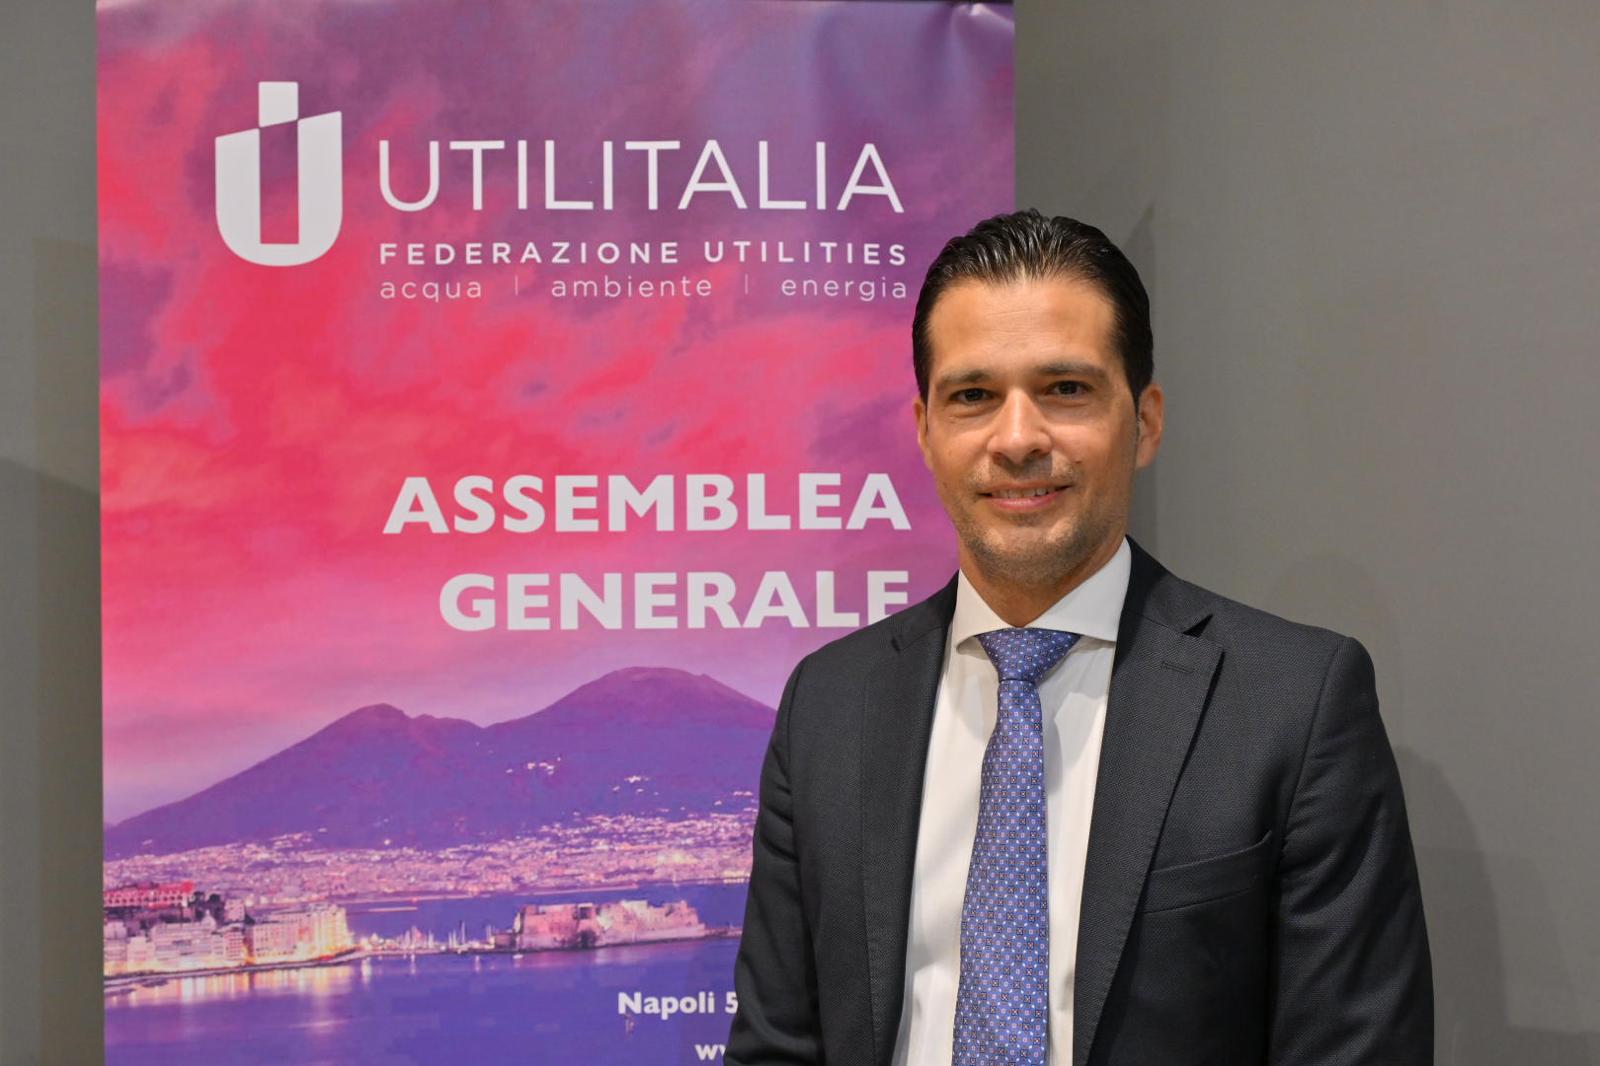 Roberto Mantovanelli è stato eletto Vicepresidente di Utilitalia